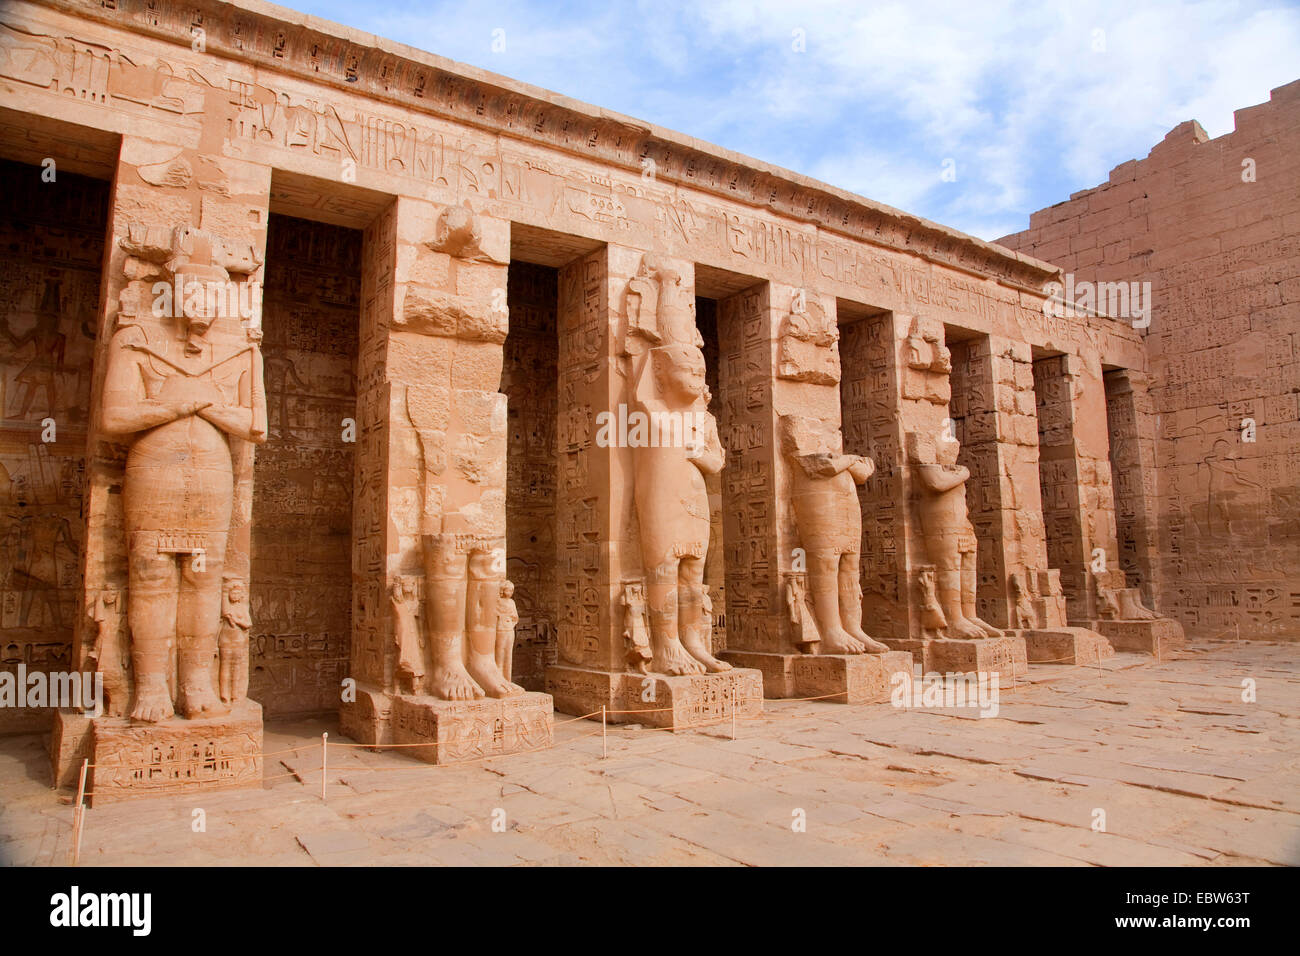 Sept colonnes en forme de dieu égyptien Osiris dans le temple funéraire de Ramsès III, Médinet Habou, Egypte, Louxor, Theben-West Banque D'Images